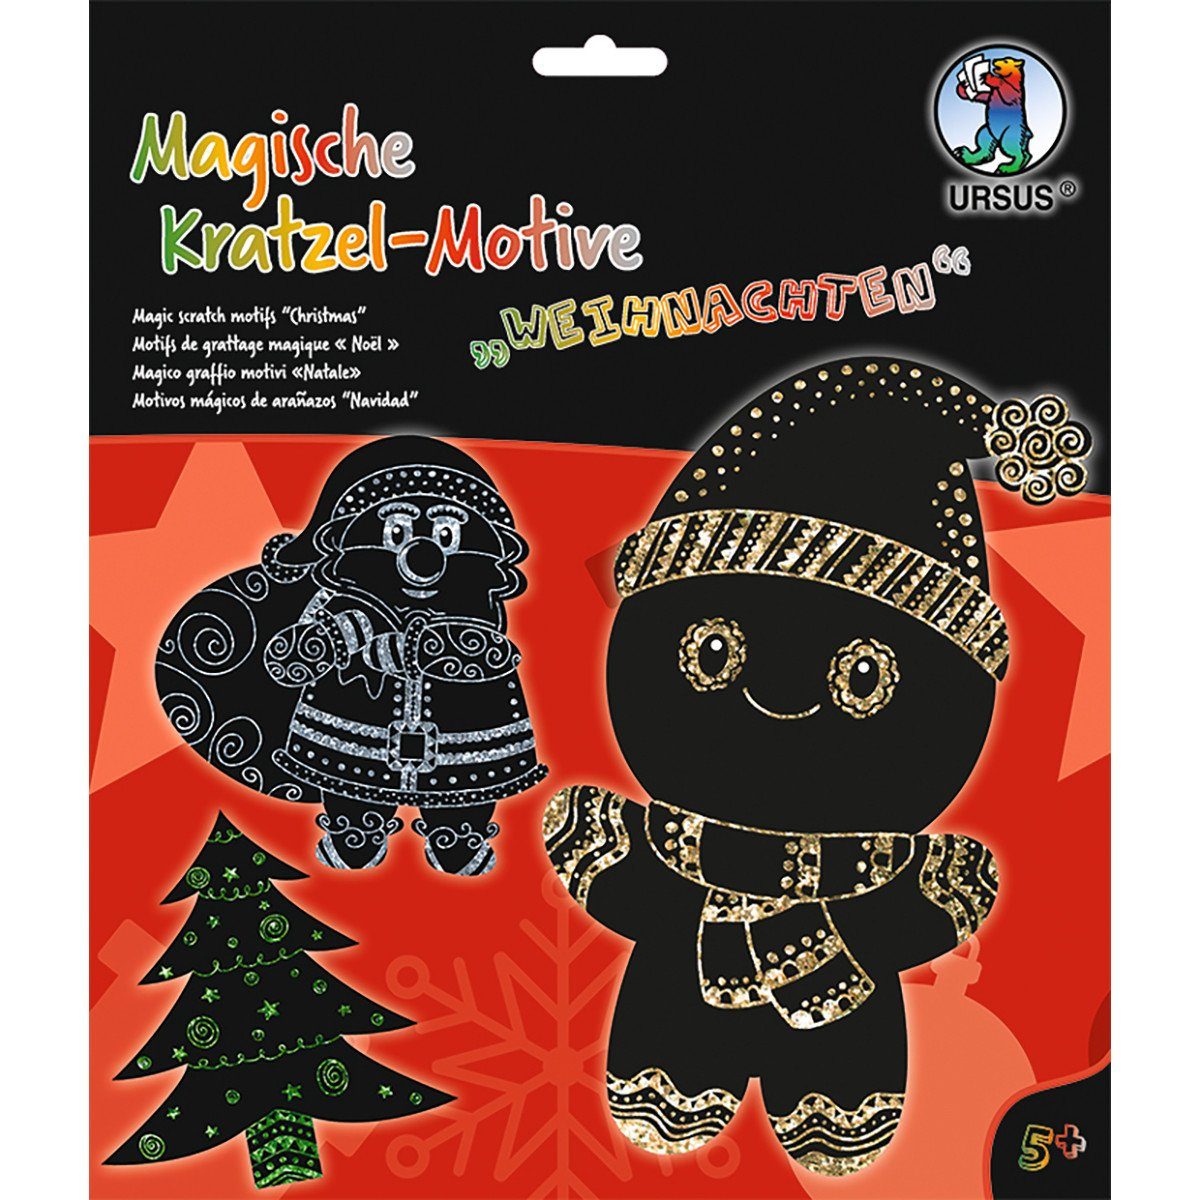 Folat Hängedekoration URSUS Magische Kratzel-Motive Weihnachten